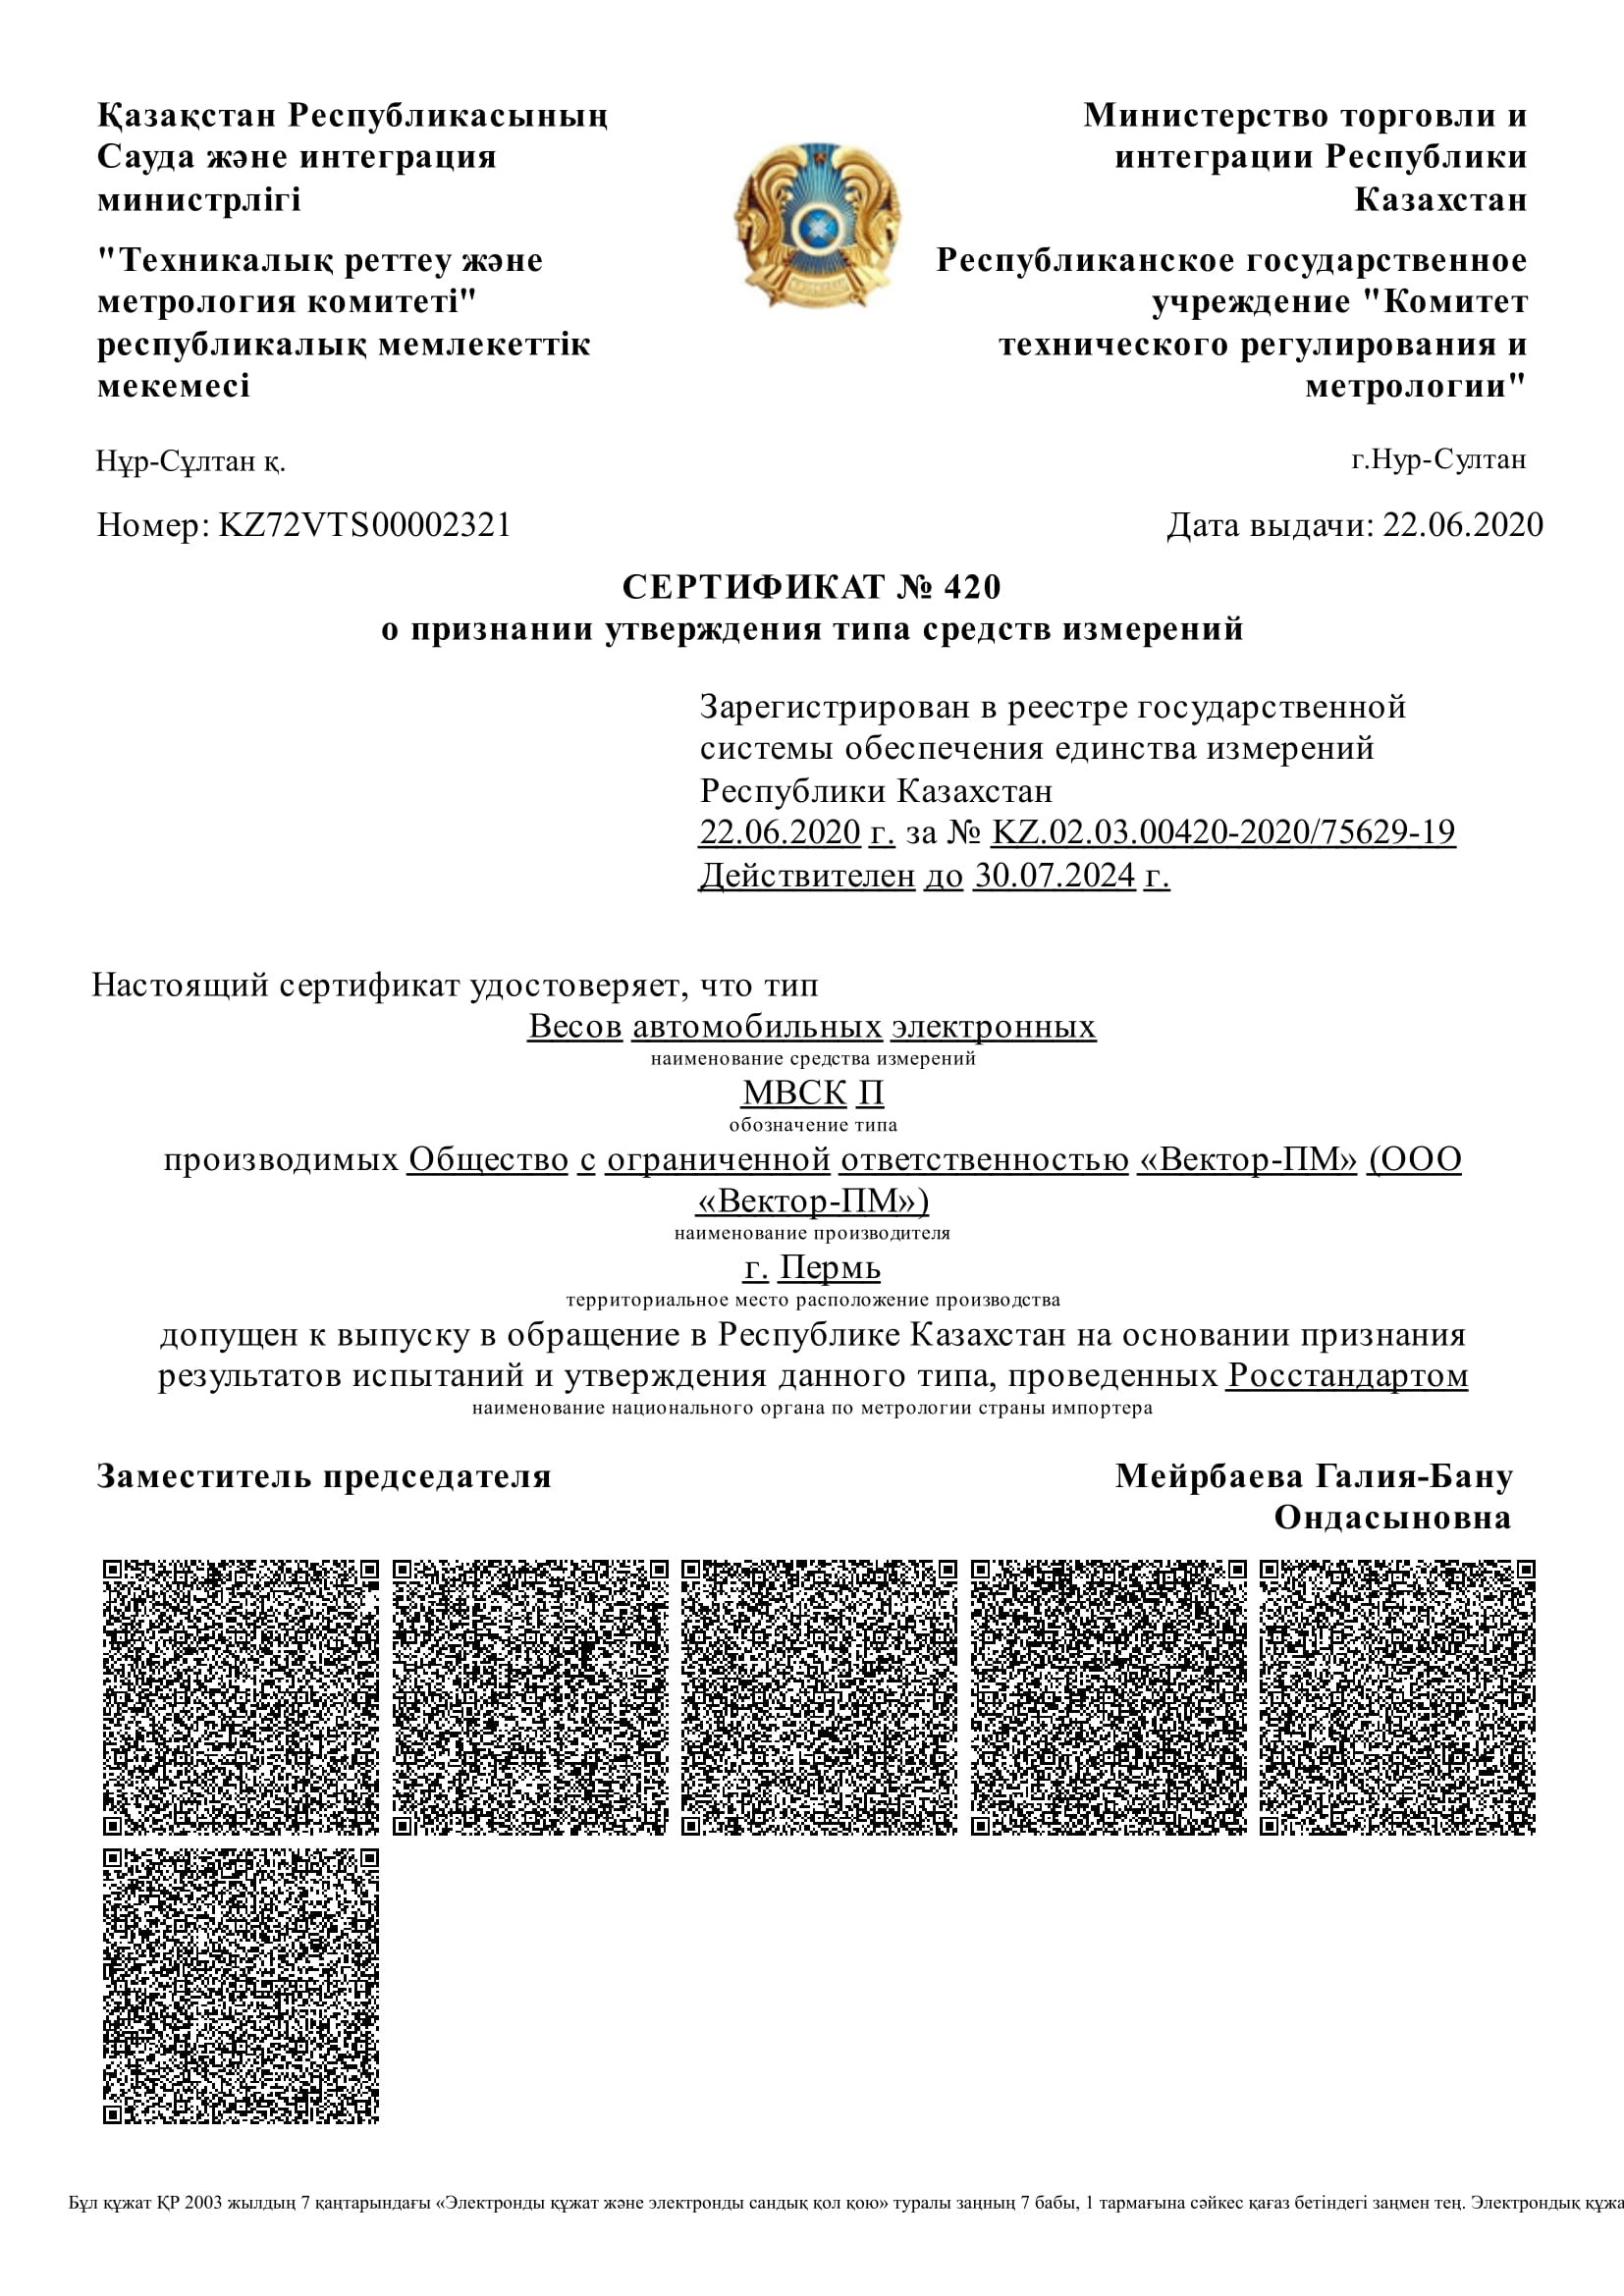 Сертификат в казахстан МВСК П_ru (подклажные и поосевые на русском)